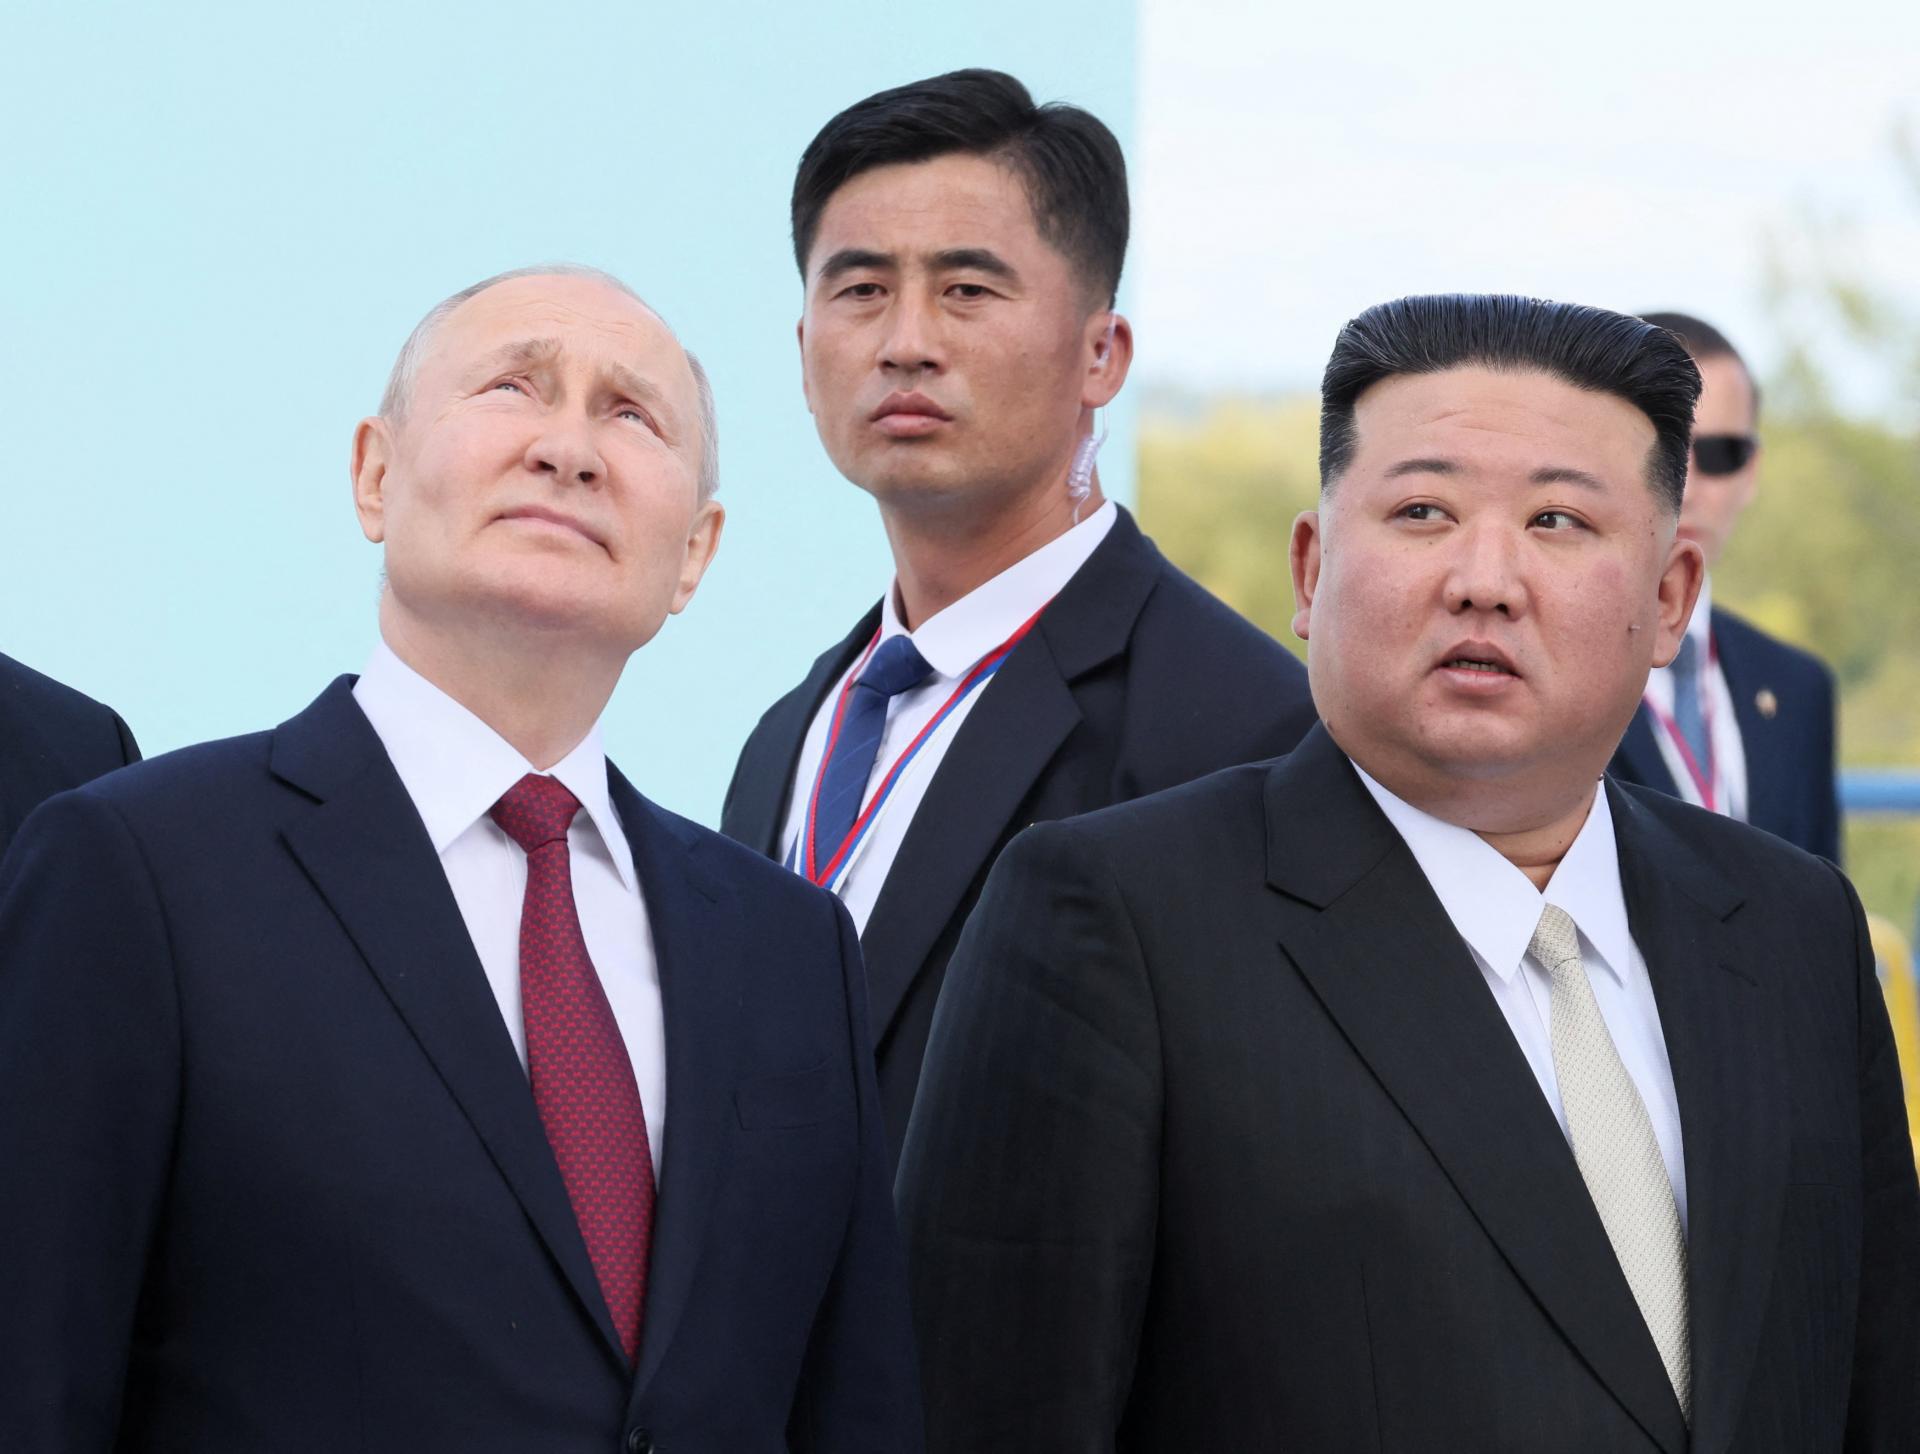 Nebudú váhať s uvalením sankcií. Presun zbraní medzi Severnou Kóreu a Ruskom je pre USA červenou čiarou